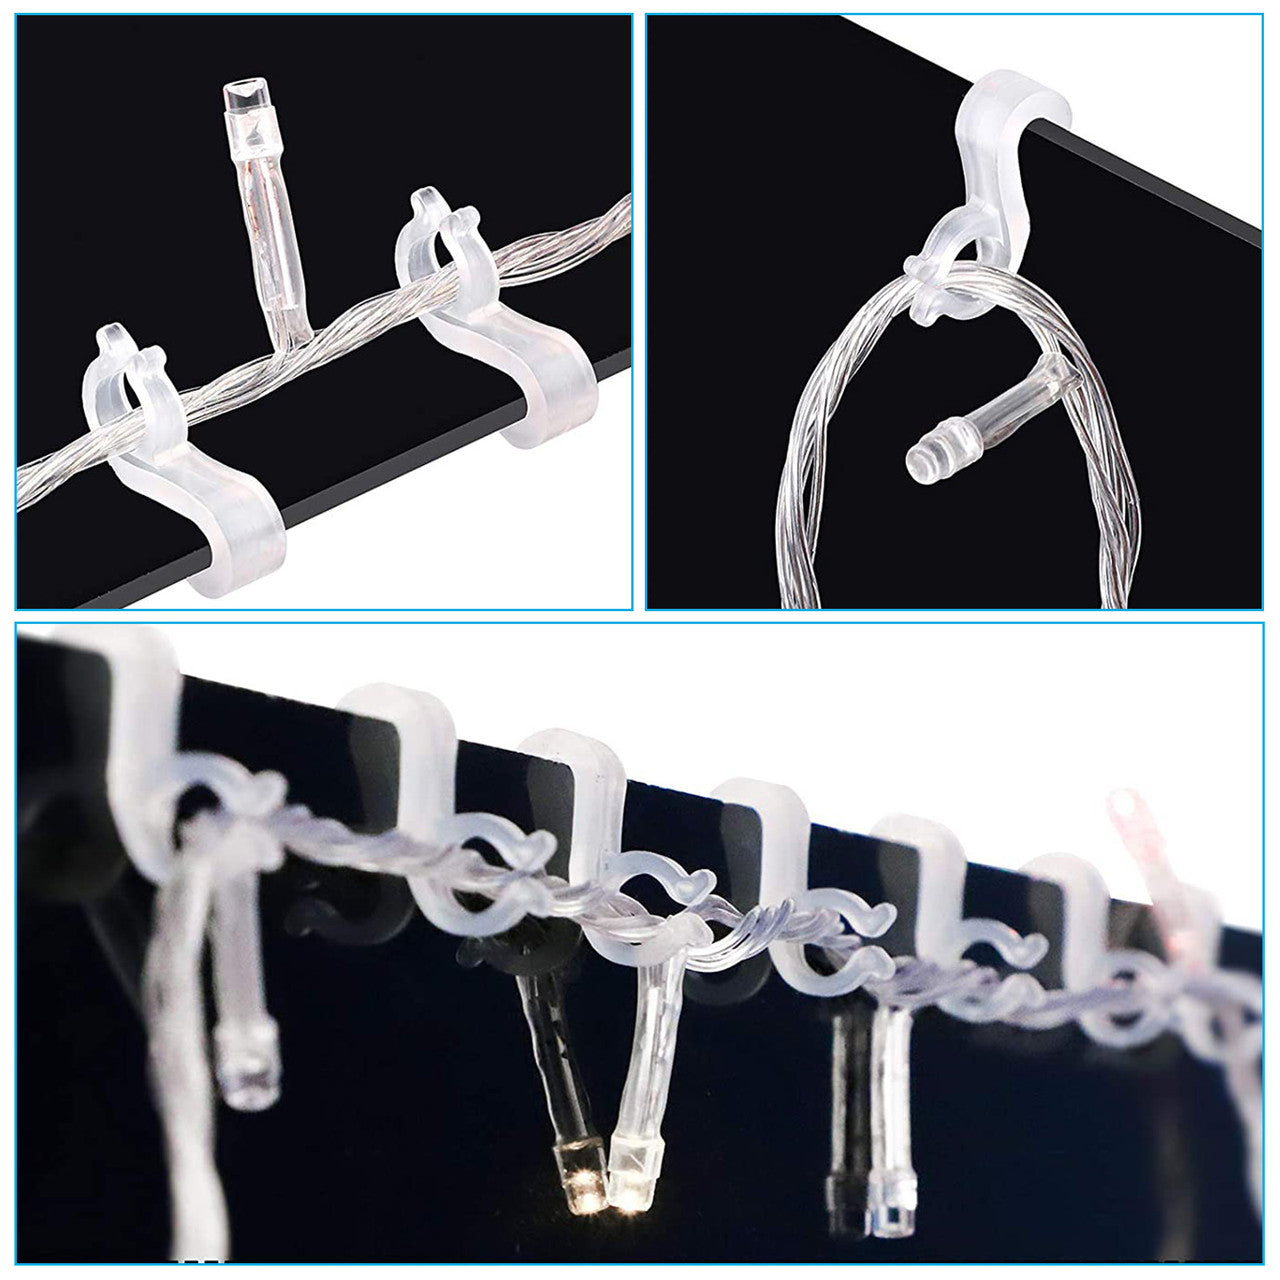 200 Pcs String Plastic Light Hooks - Christmas String Light Hooks S Clip Hooks for Xmas Festival Decoration Outside String Lights (White